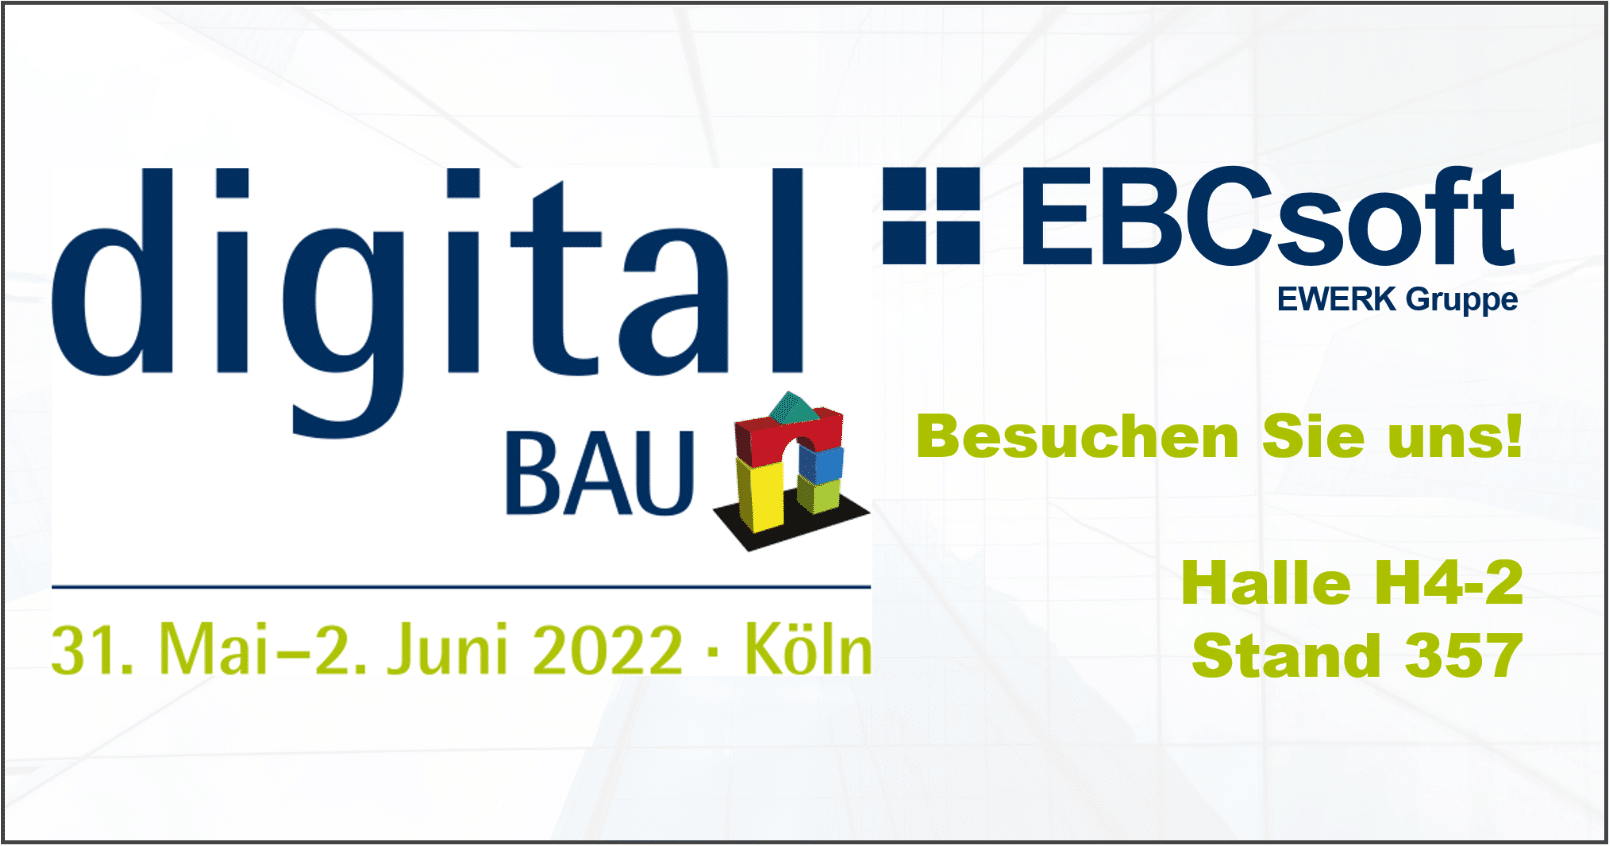 Ebcsoft auf der digital Bau am 31. Mai bis 2. Juni 2022 in Köln